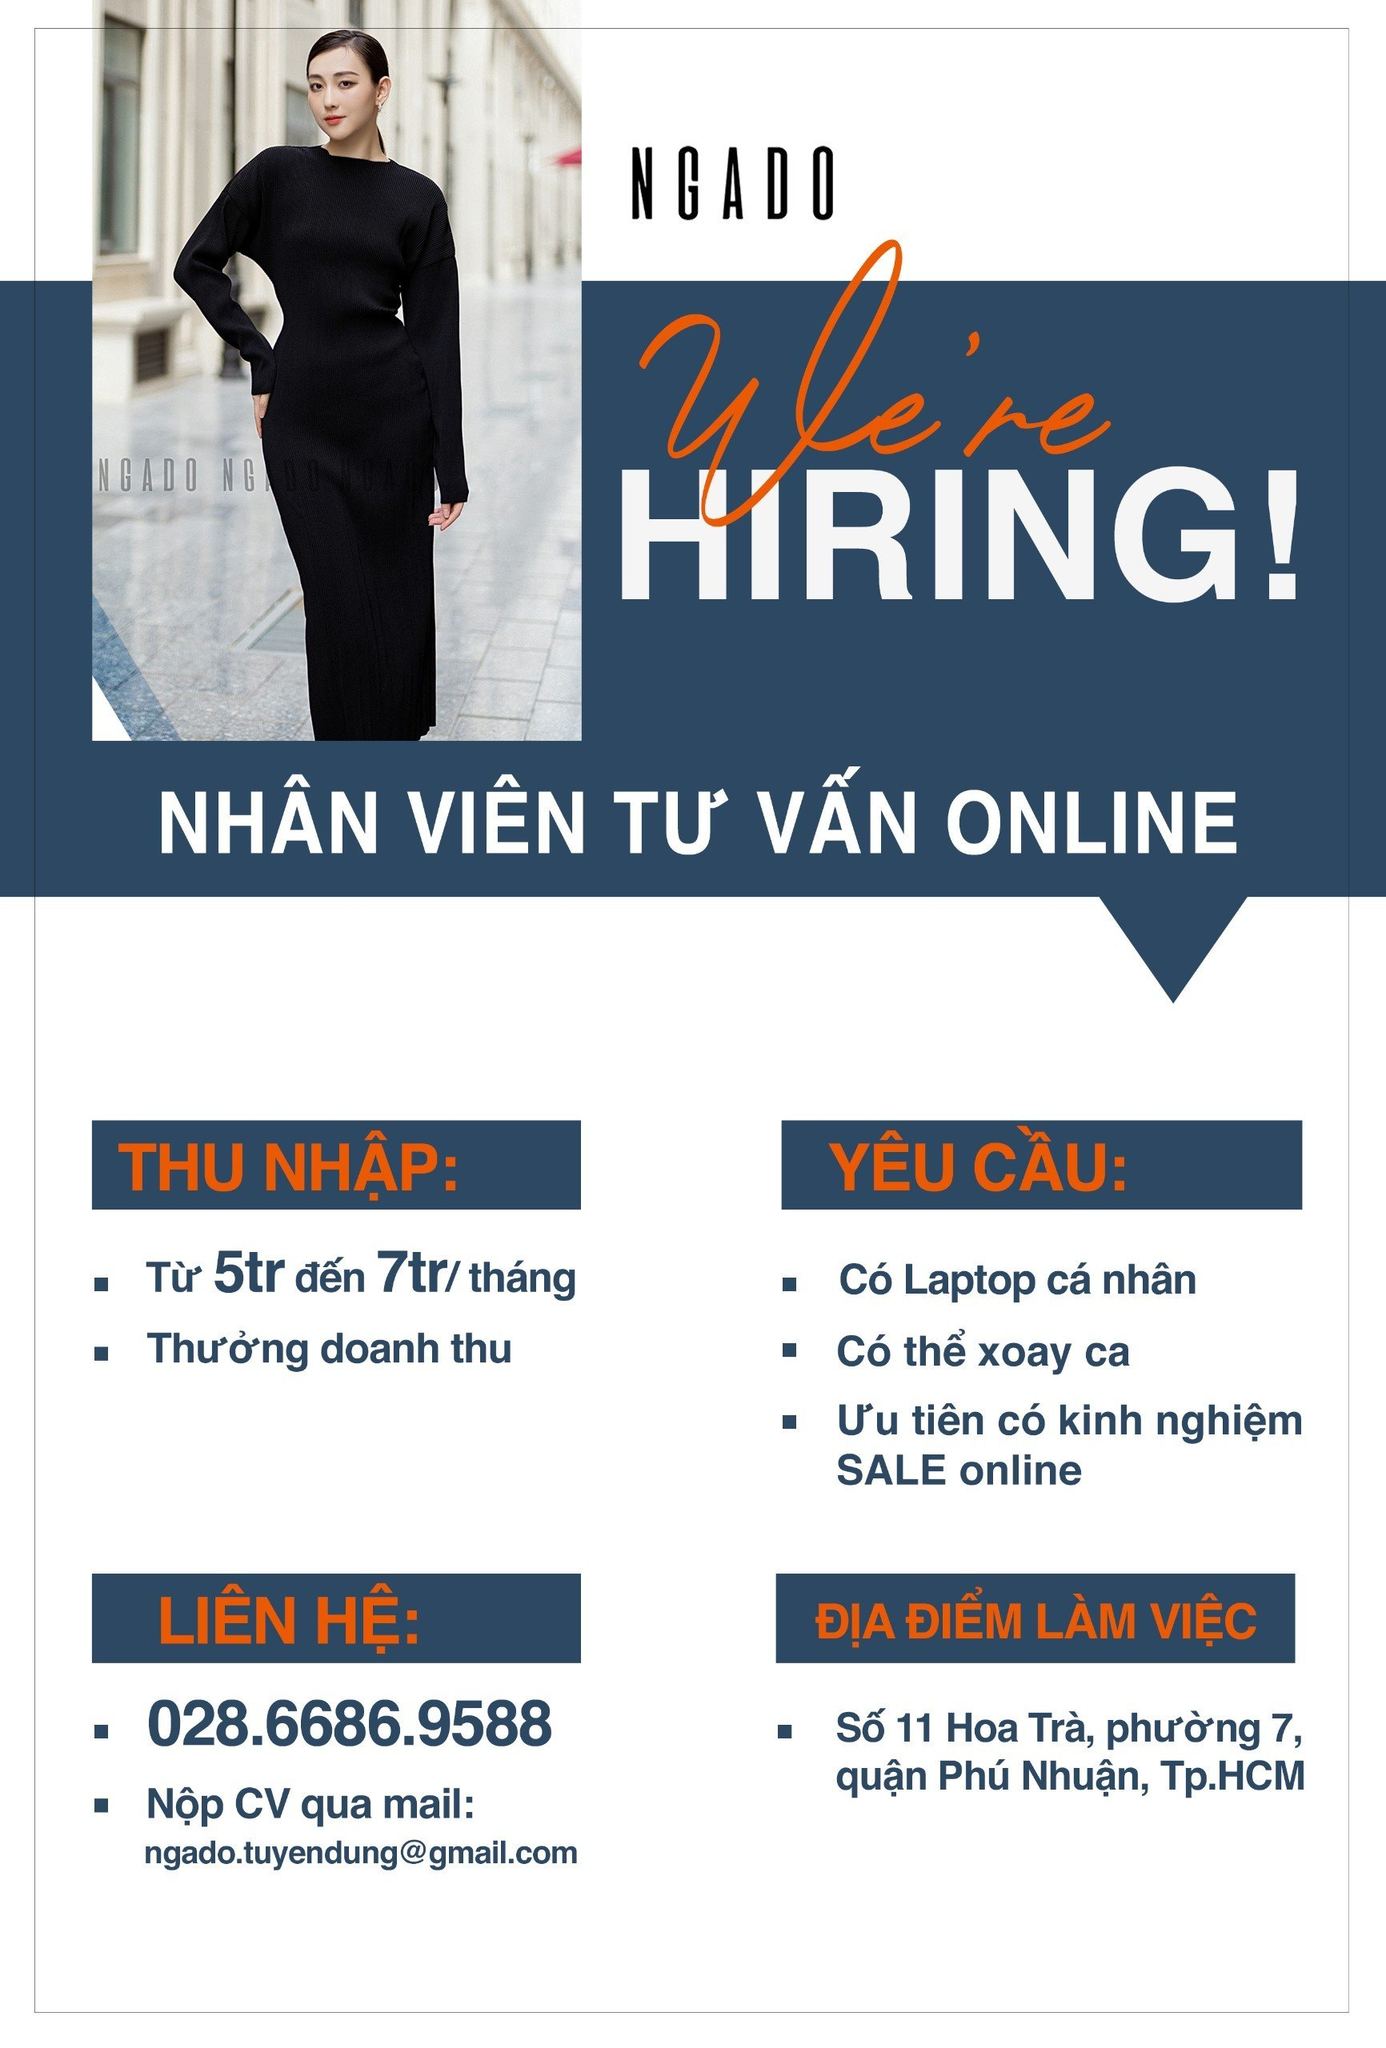 NGADO tuyển dụng: NHÂN VIÊN TƯ VẤN ONLINE